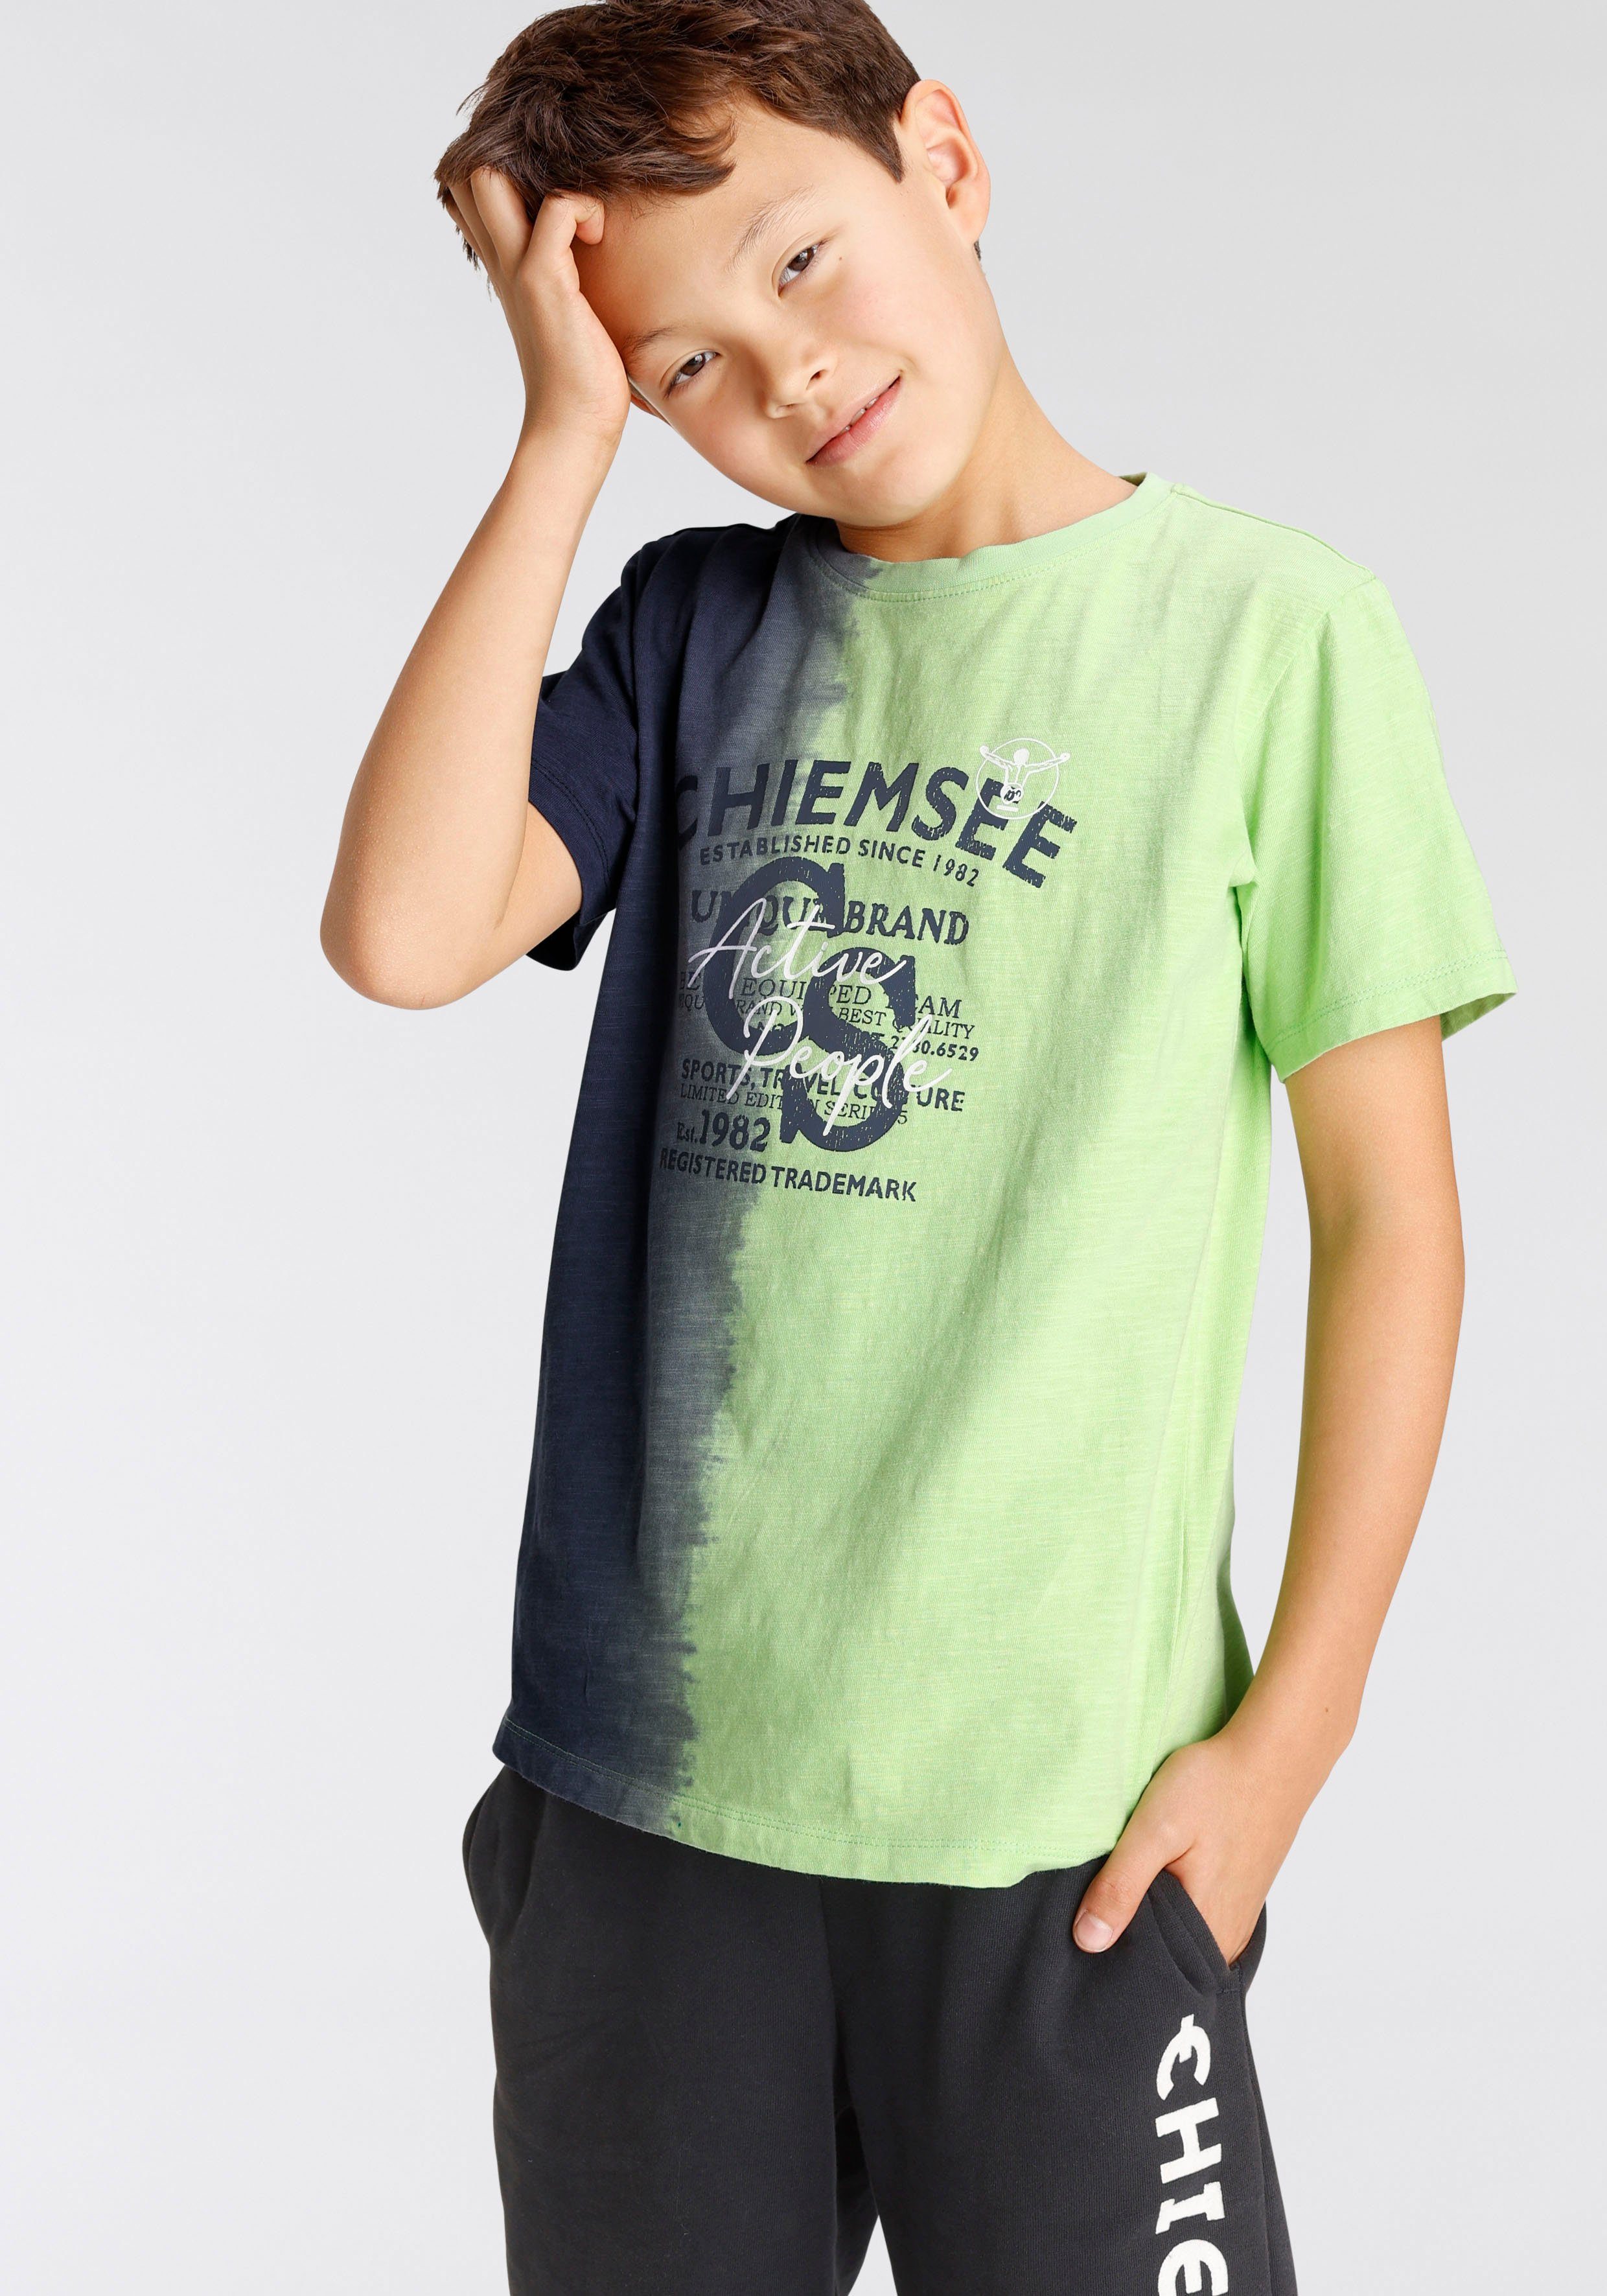 vertikalem Farbverlauf mit Farbverlauf Chiemsee T-Shirt